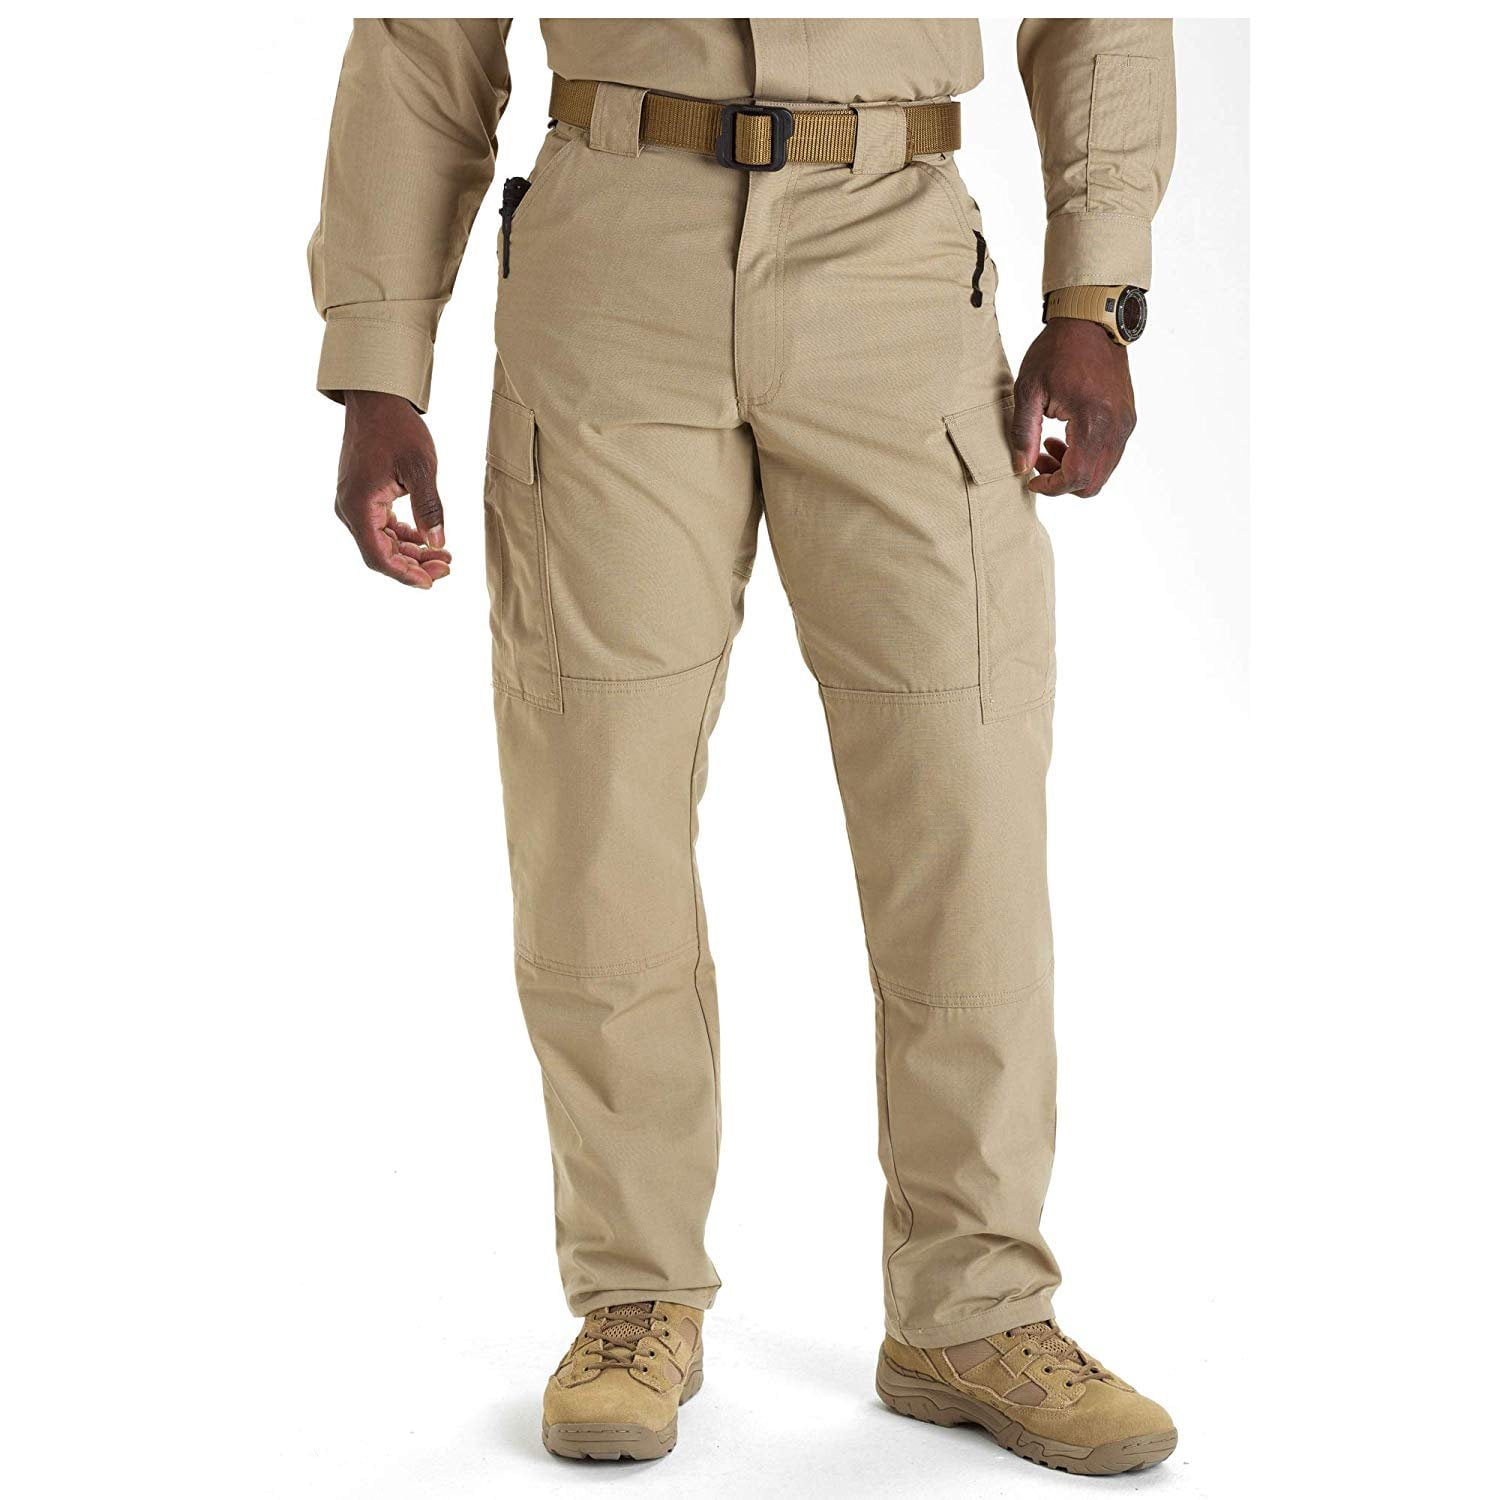 Men's Ripstop TDU Pants, TDU Khaki - Walmart.com - Walmart.com